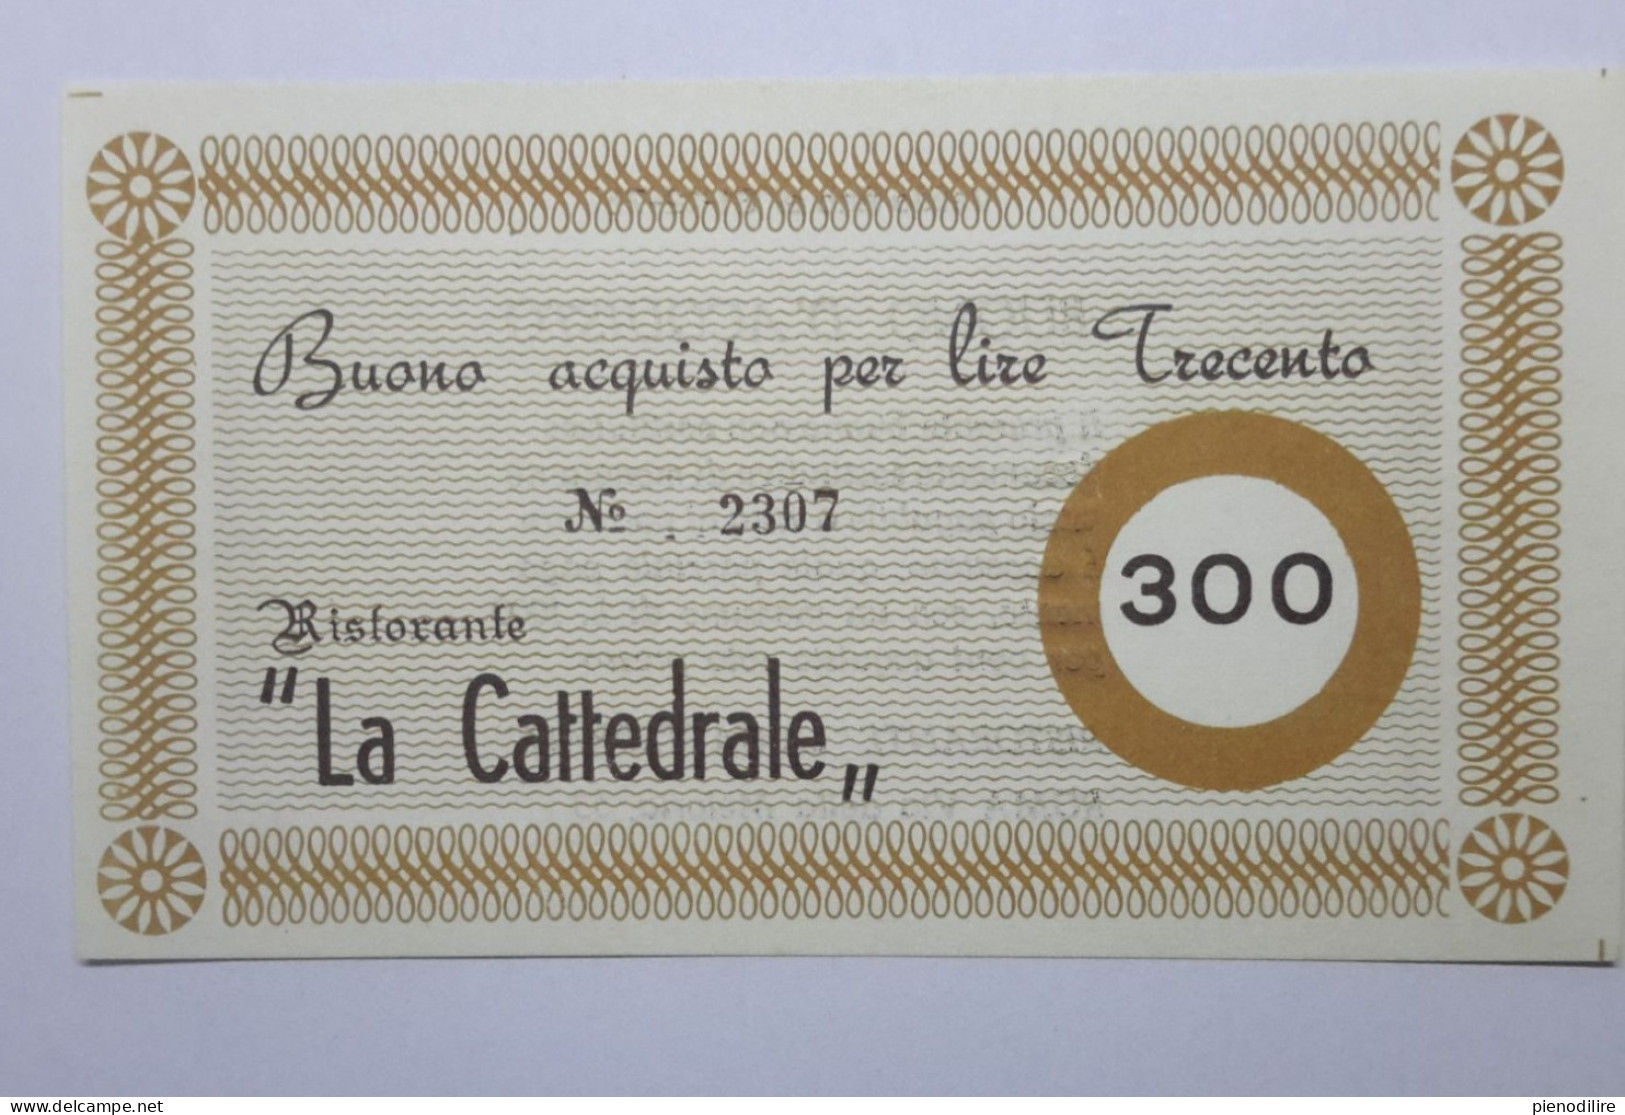 LOTTO 4Pz. 100 200 300 400 LIRE BUONI ACQUISTO RISTORANTE LA CATTEDRALE ROMA VALIDO FINO AL 31.12.1976 (A.4) - [10] Cheques Y Mini-cheques